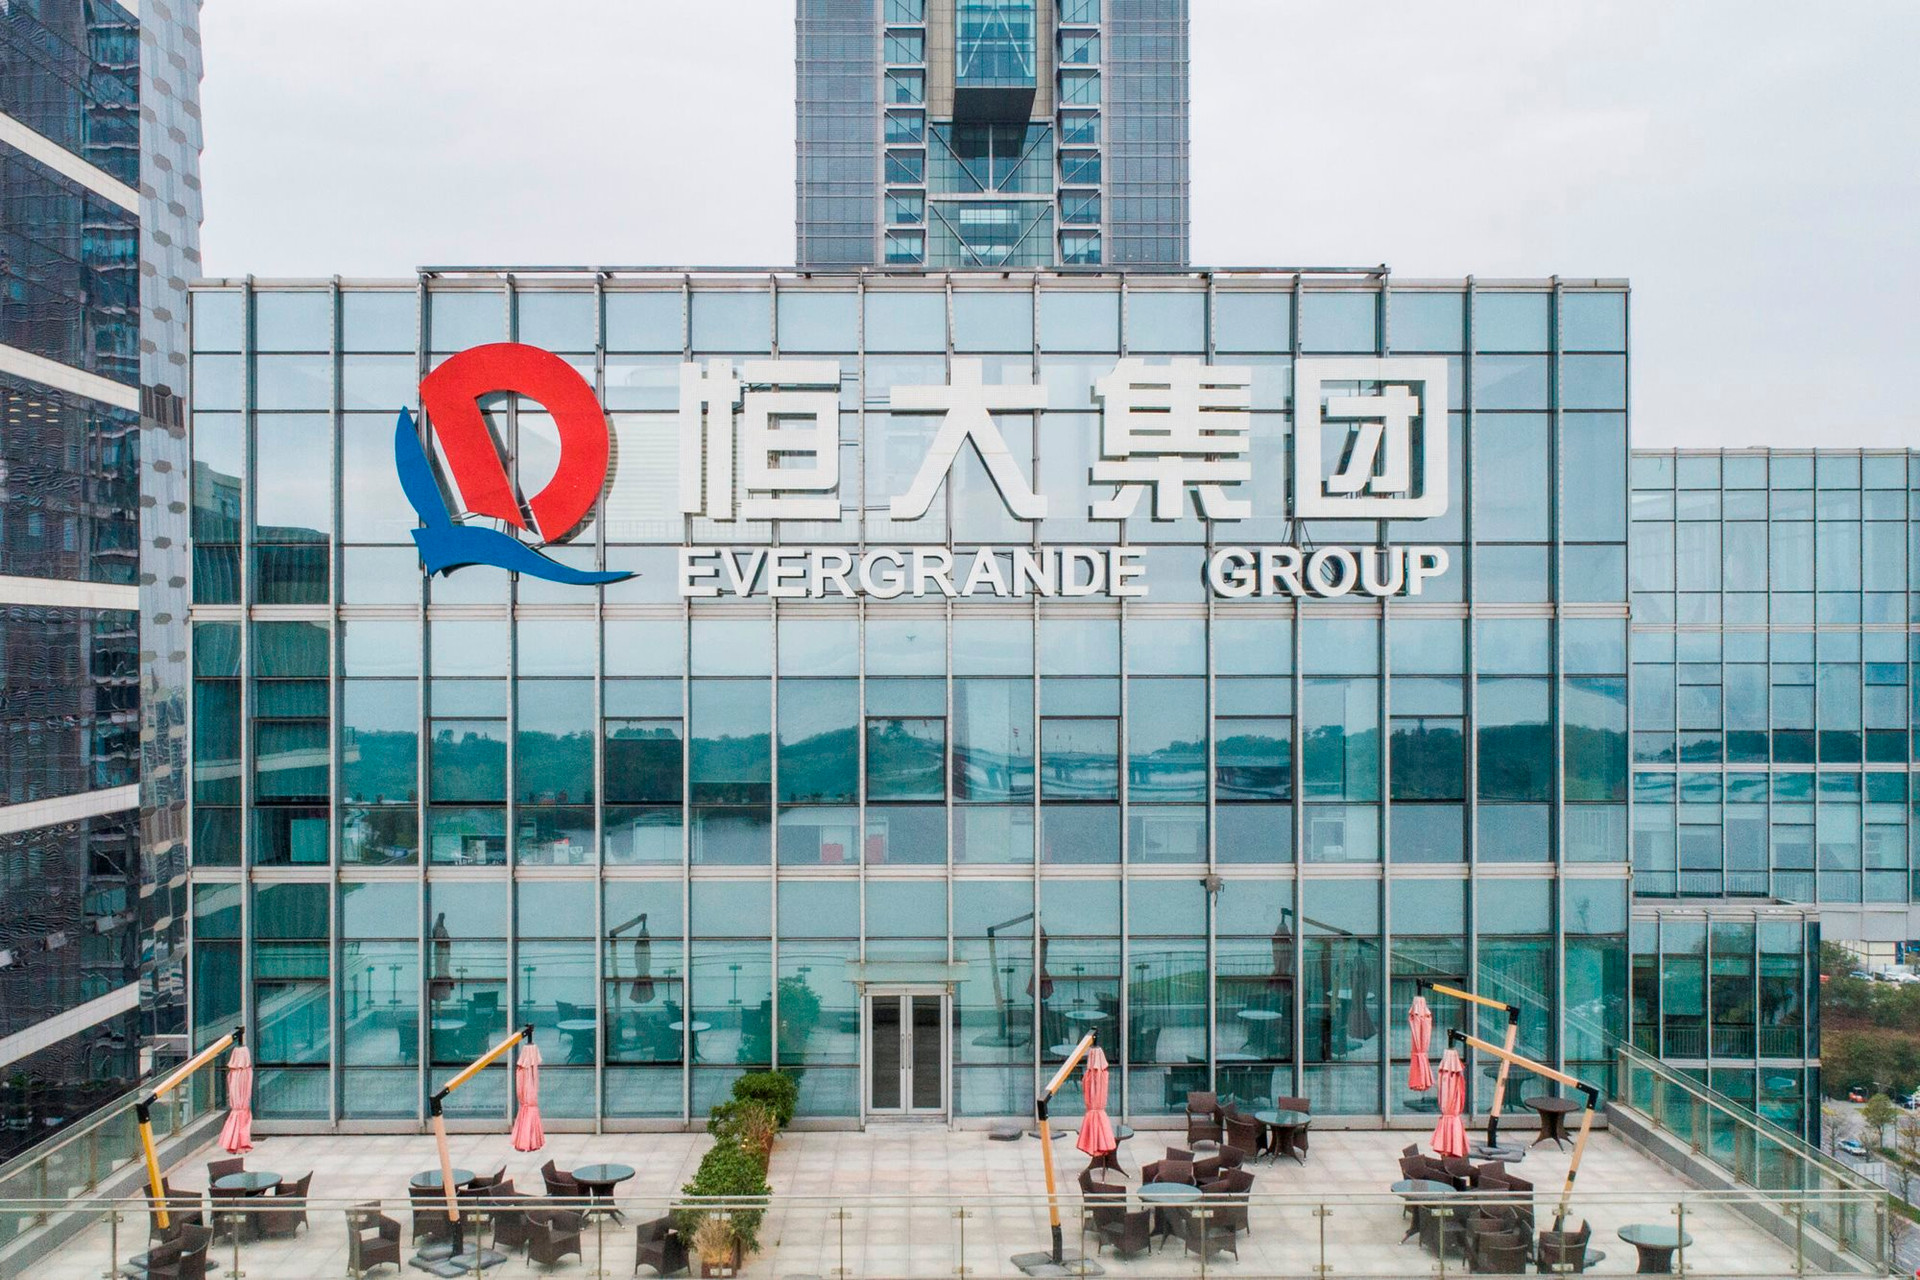 Buồn của Evergrande: Cổ phiếu giảm gần 90% ngay trong phiên đầu giao dịch trở lại, trùm BĐS tỷ USD ngày nào giờ vốn hoá vỏn vẹn 586 triệu USD - Ảnh 1.